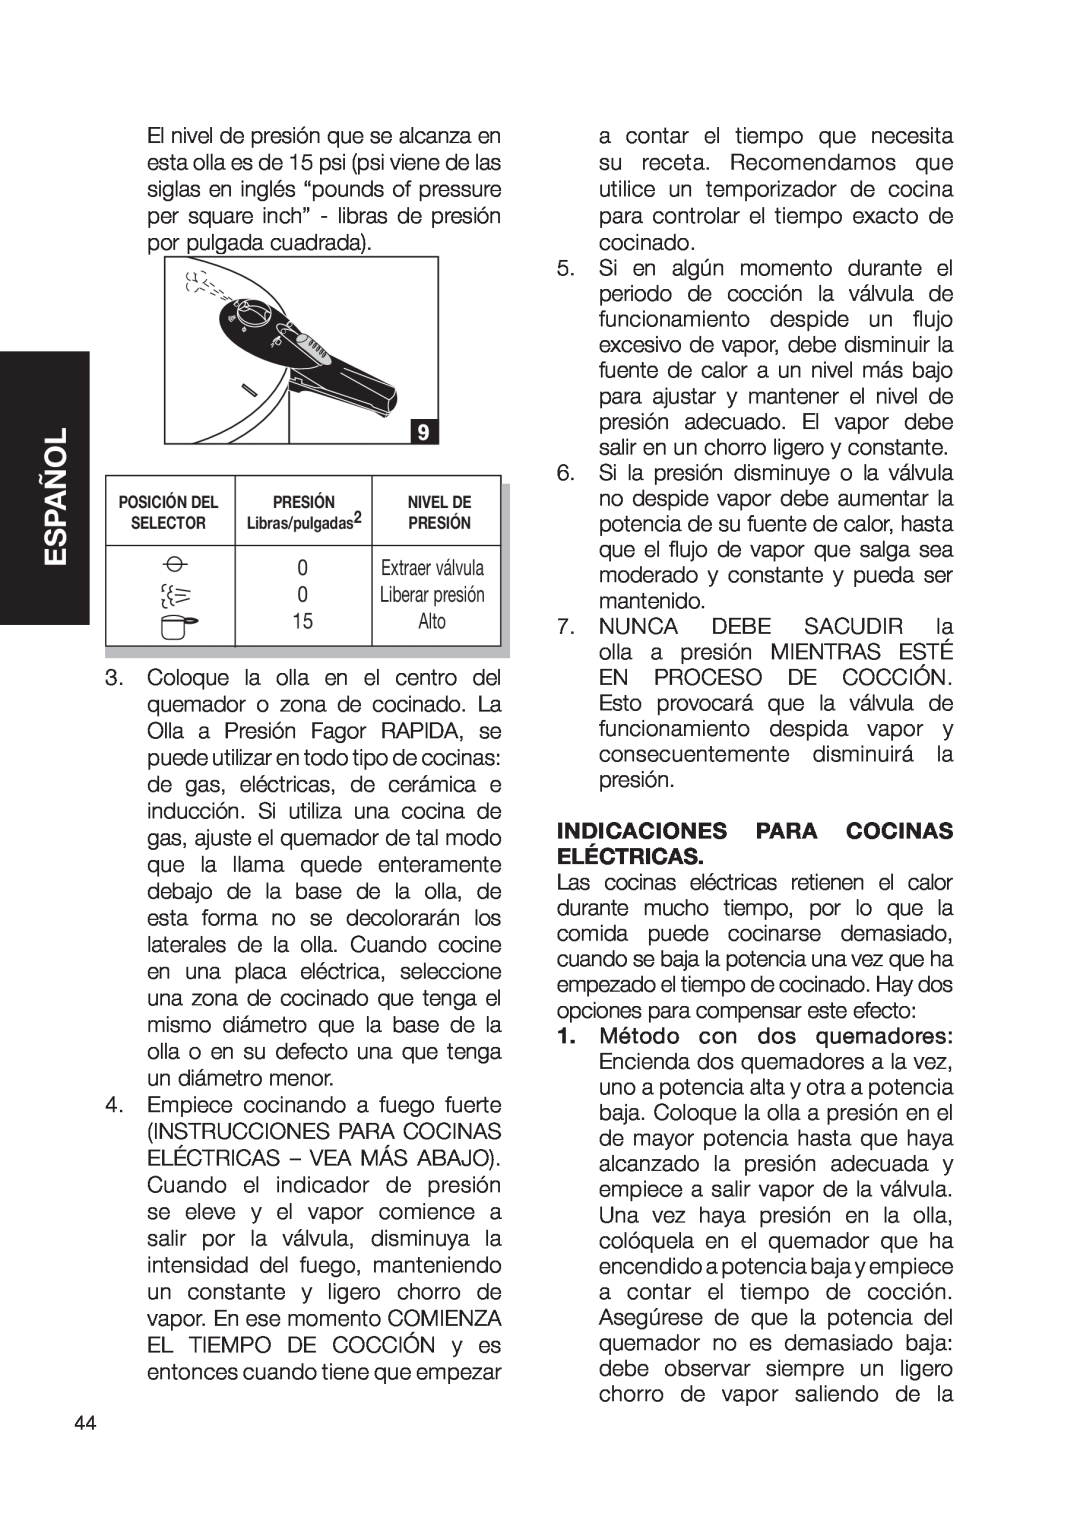 Fagor America Fagor Rapida Pressure Cooker user manual Español, Indicaciones Para Cocinas Eléctricas 